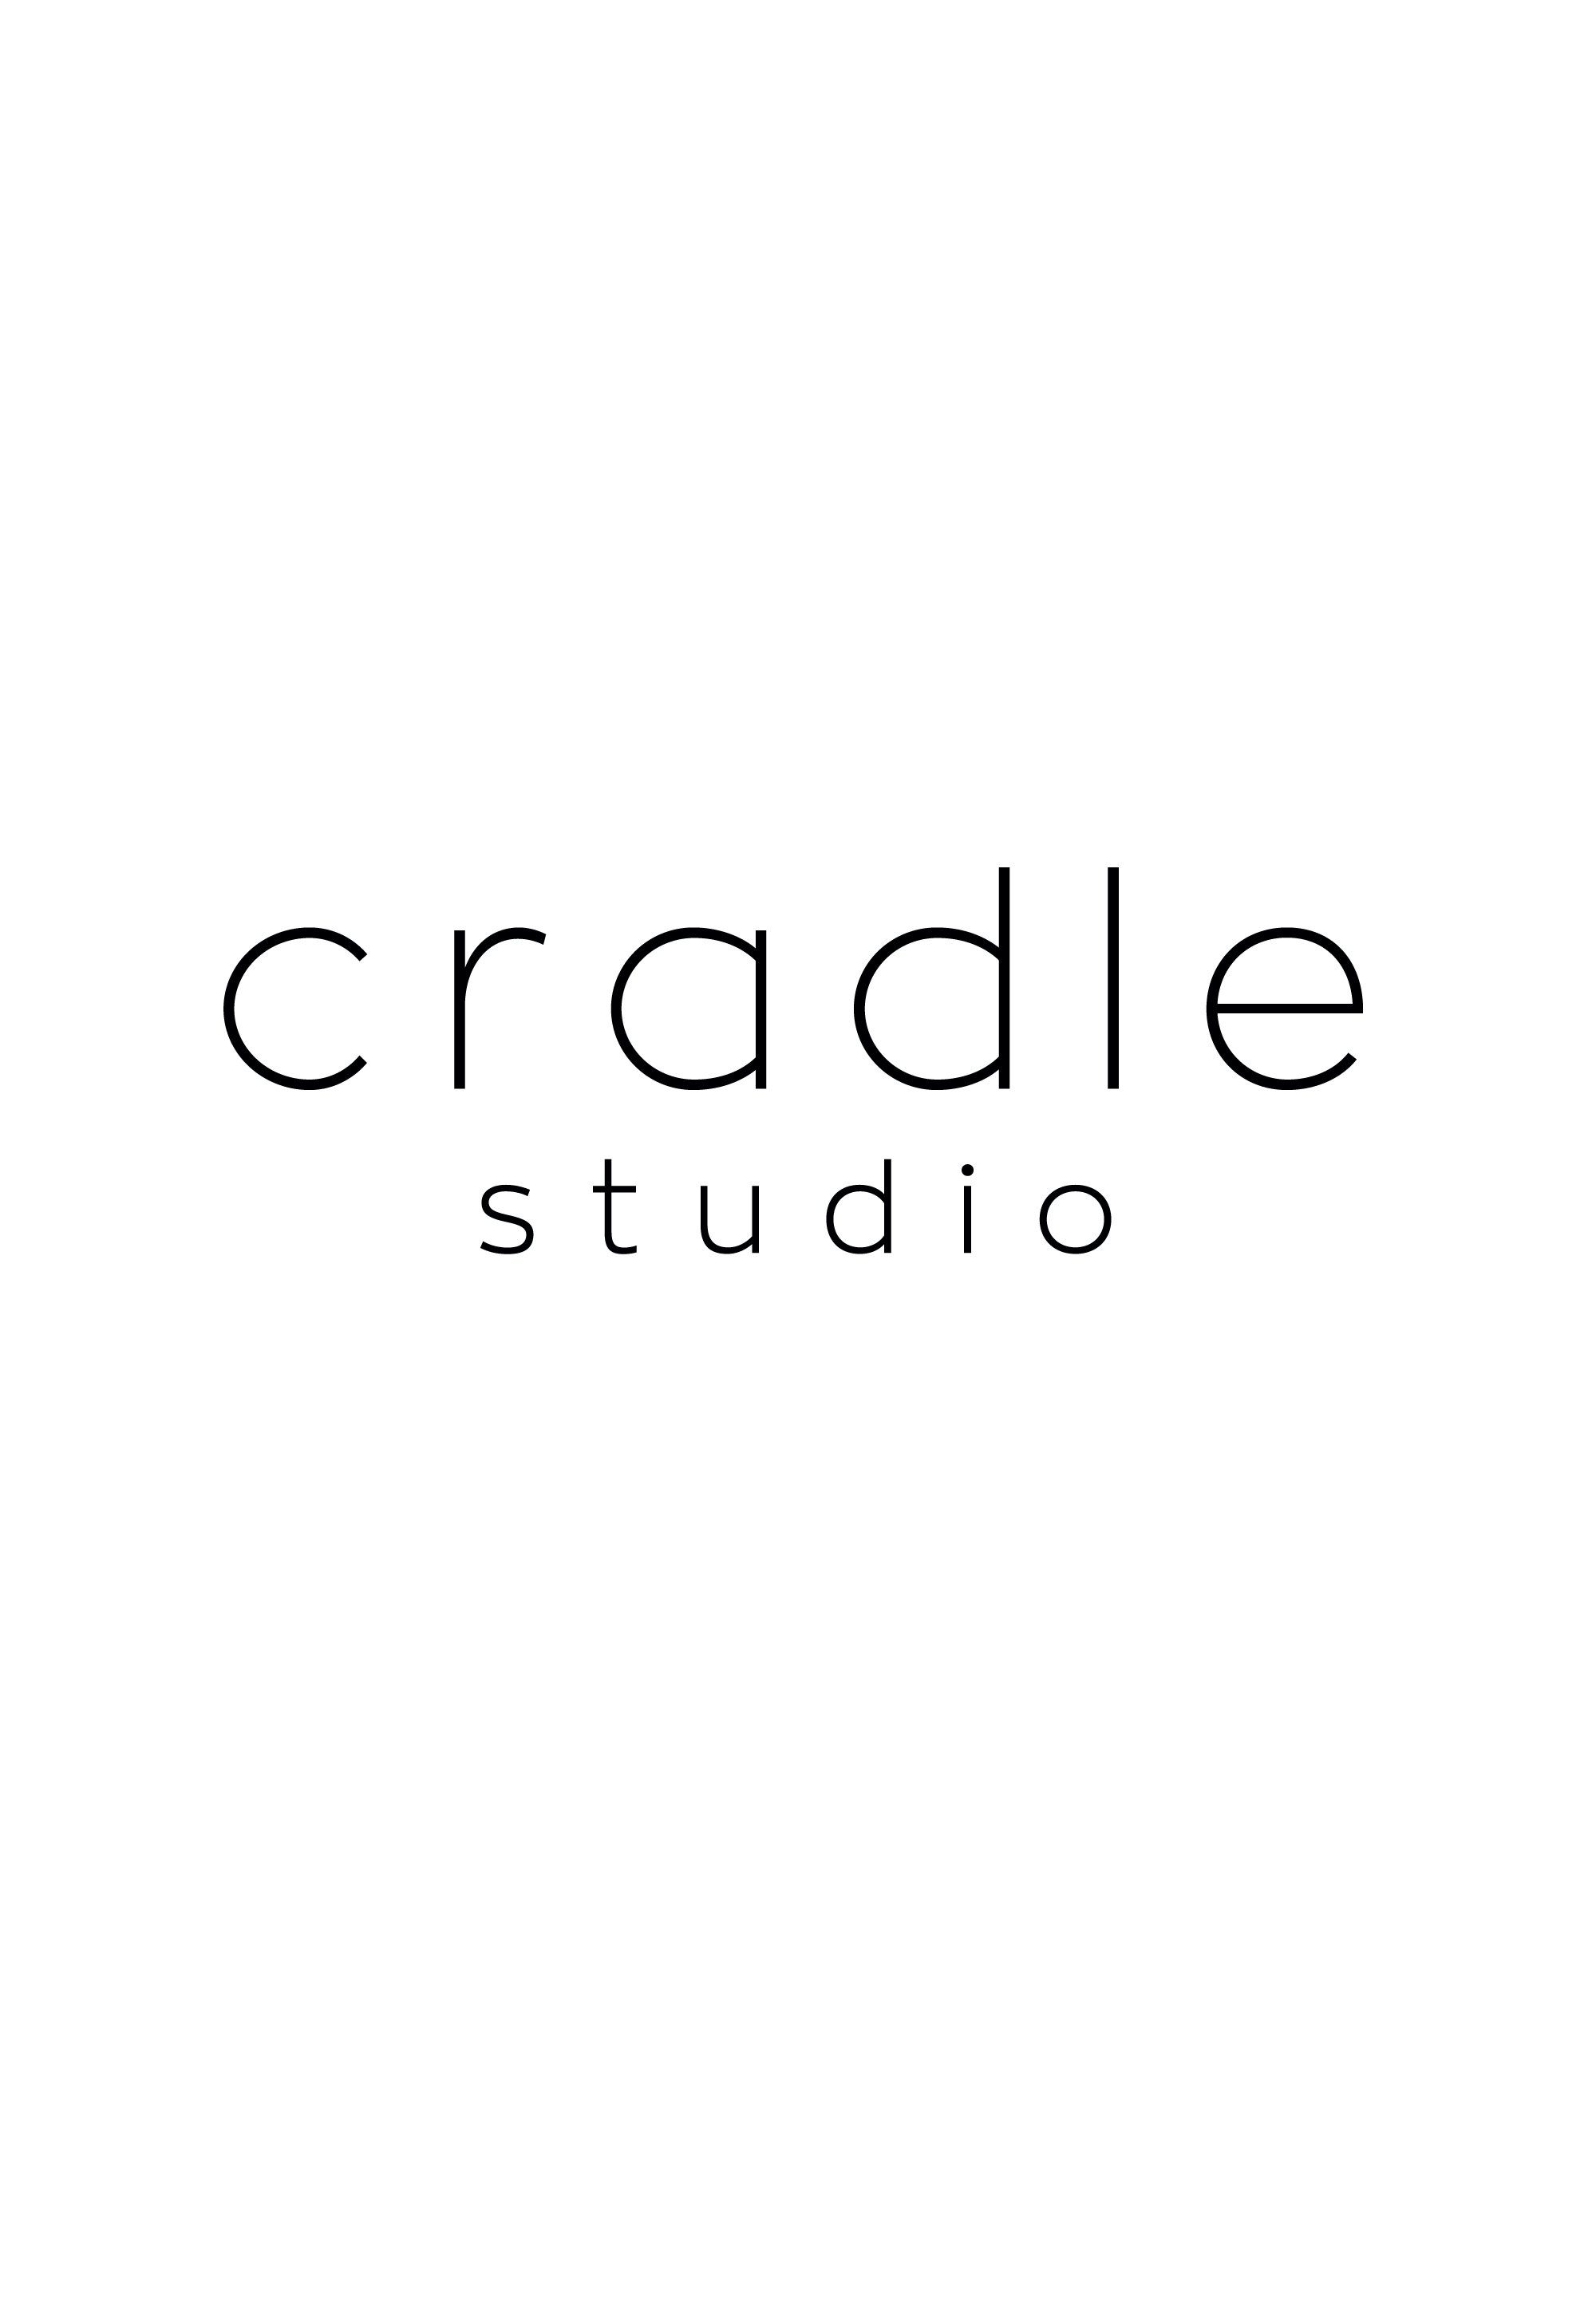 Cradle Studio